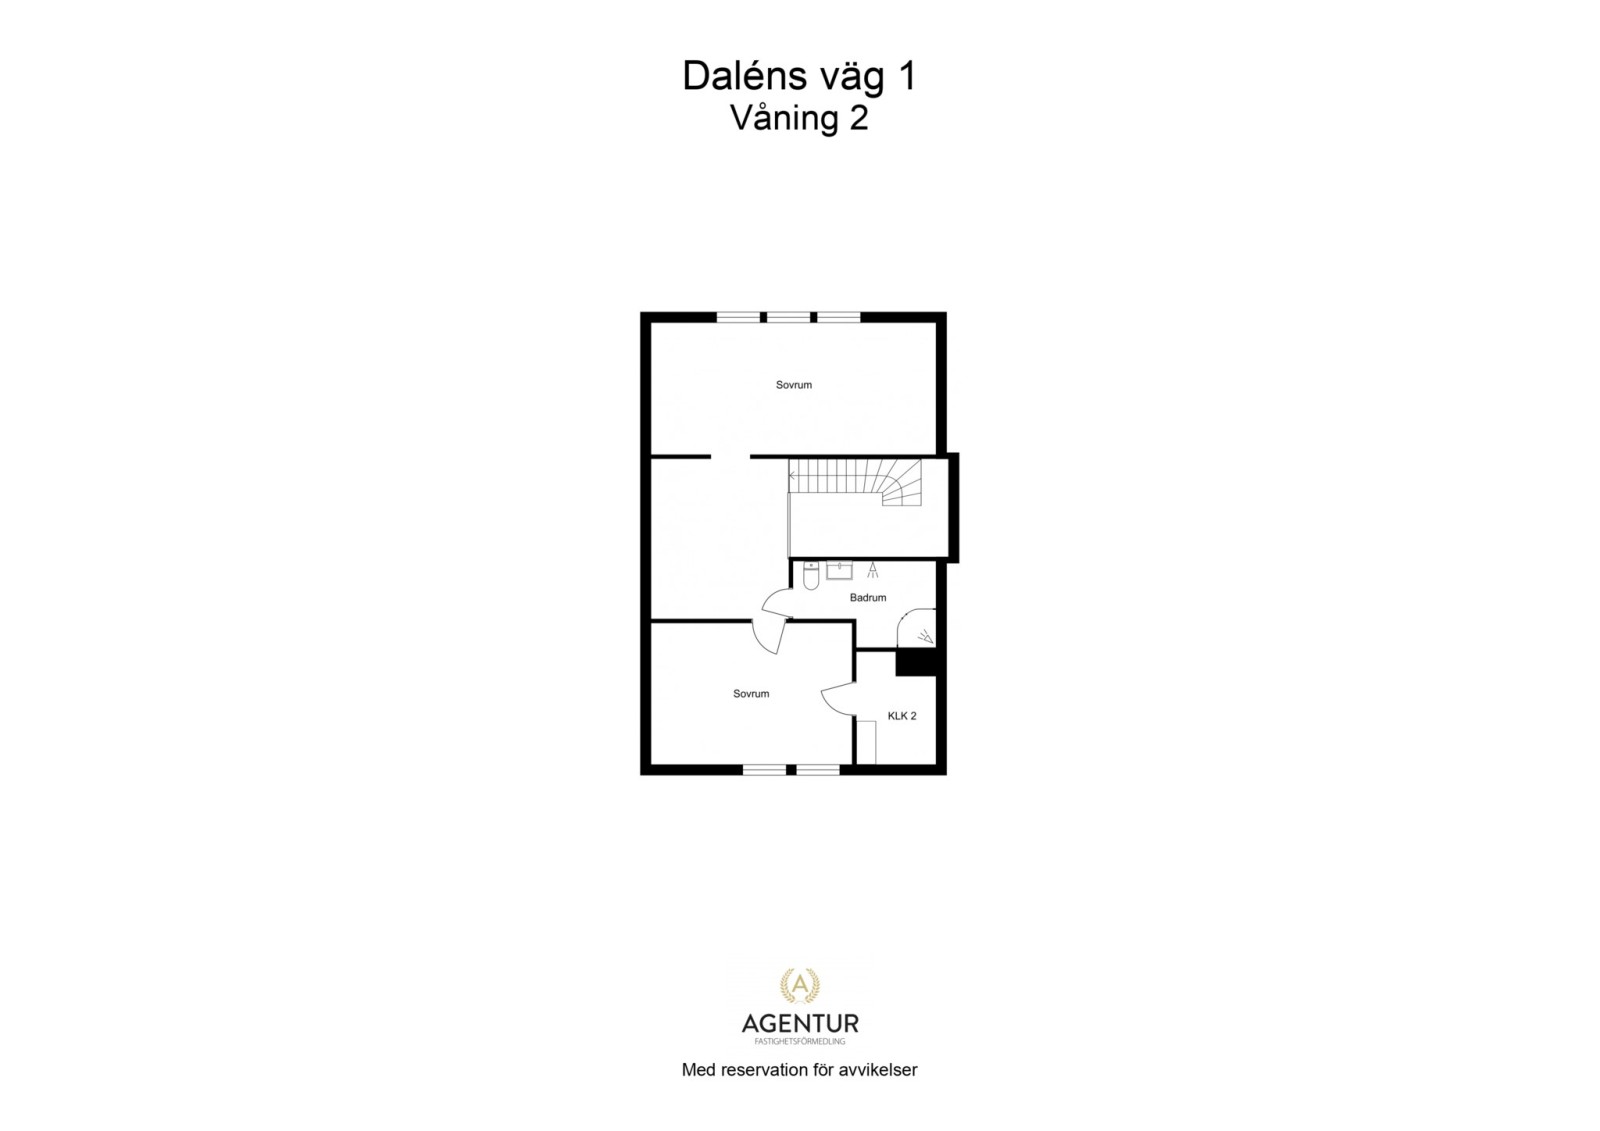 2D Floor Plan - Våning 2 - Letterhead Daléns väg 1